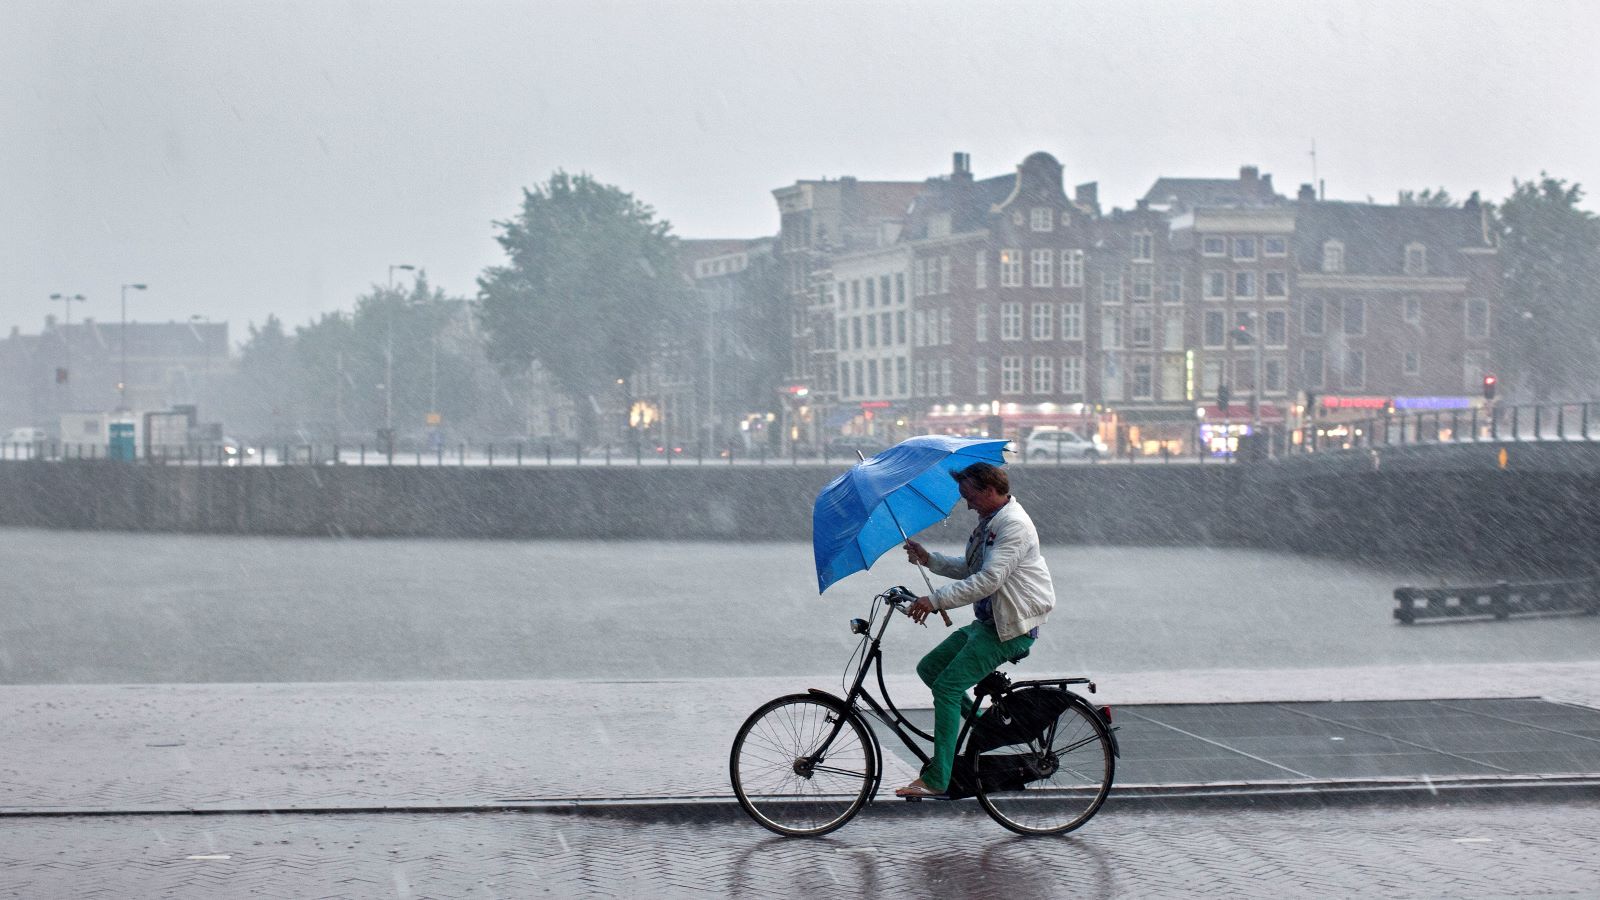 Wateroverlast in Amsterdam door regen